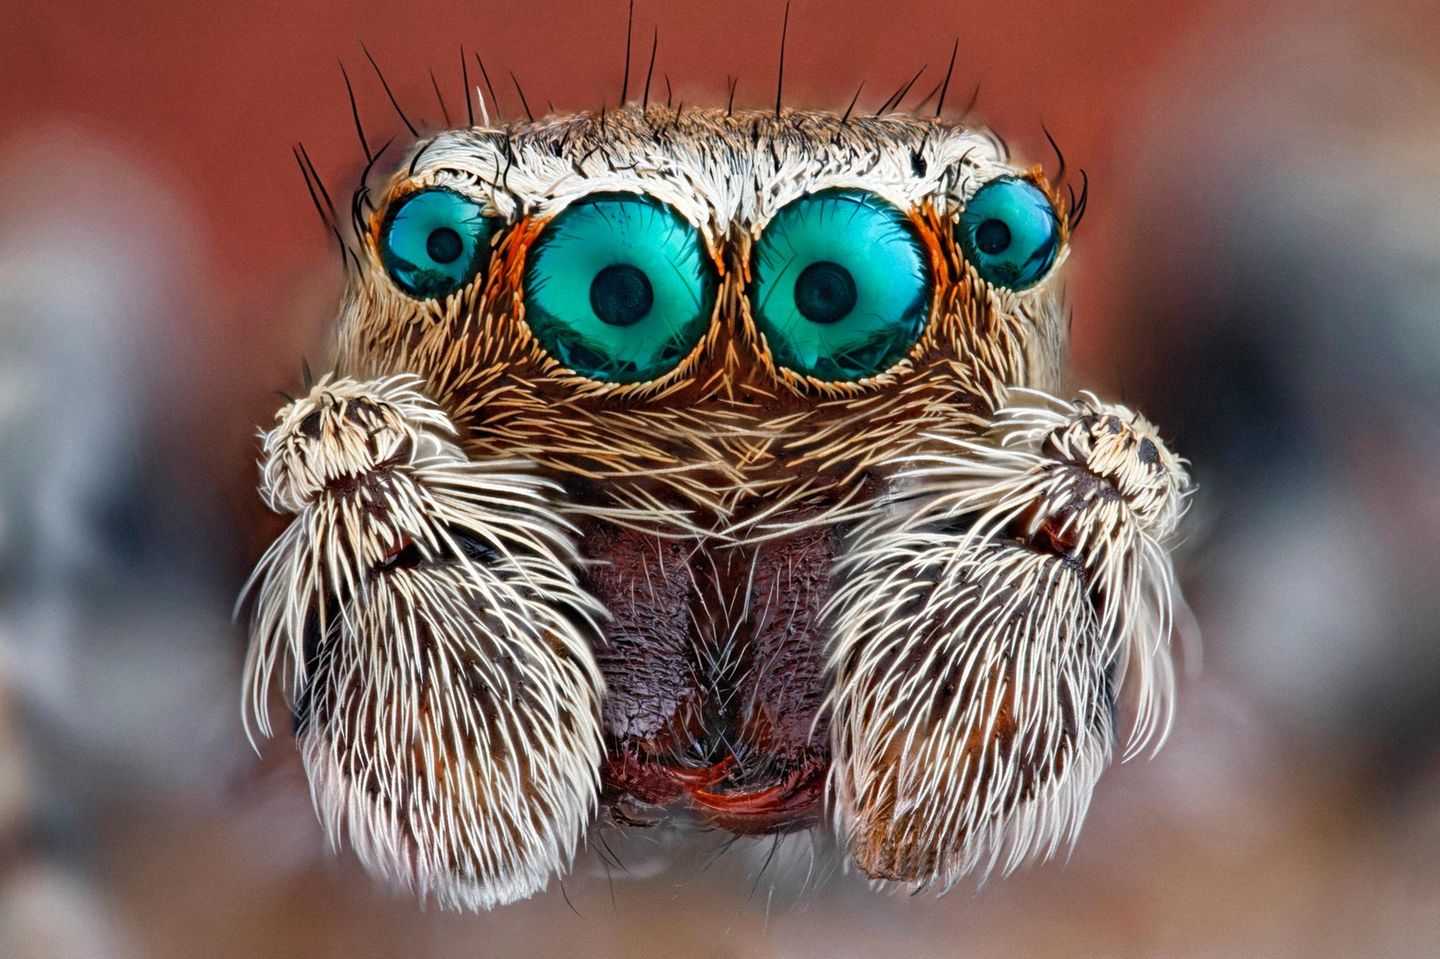 Die meisten Spinnen verfügen über acht Augen